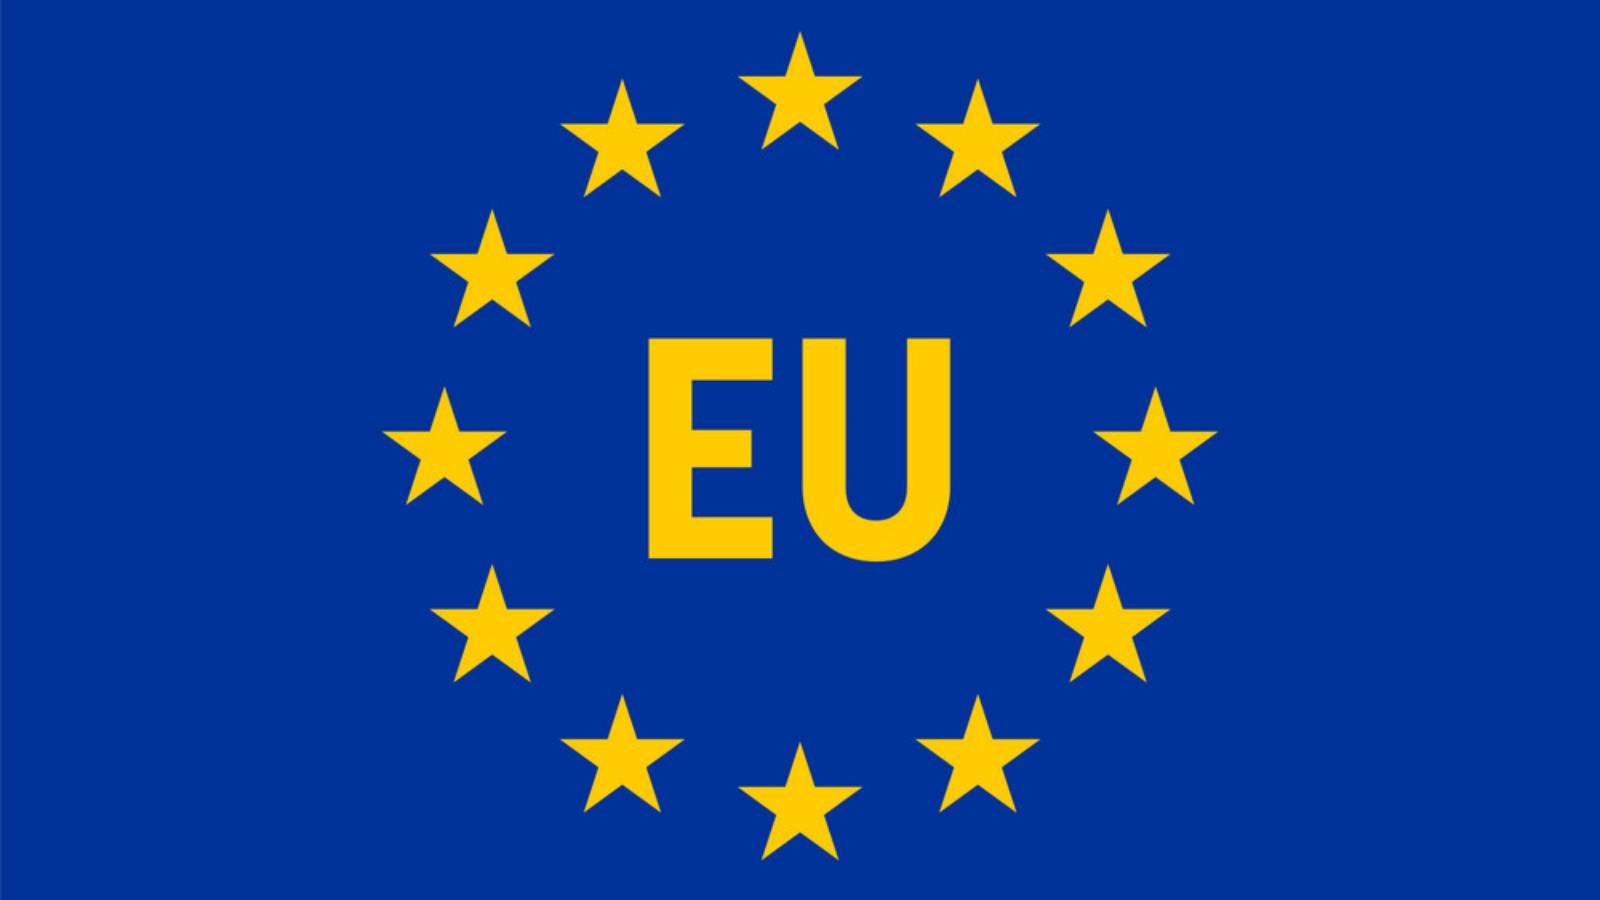 Engagements Commission européenne Soutenir Réalisé Europe